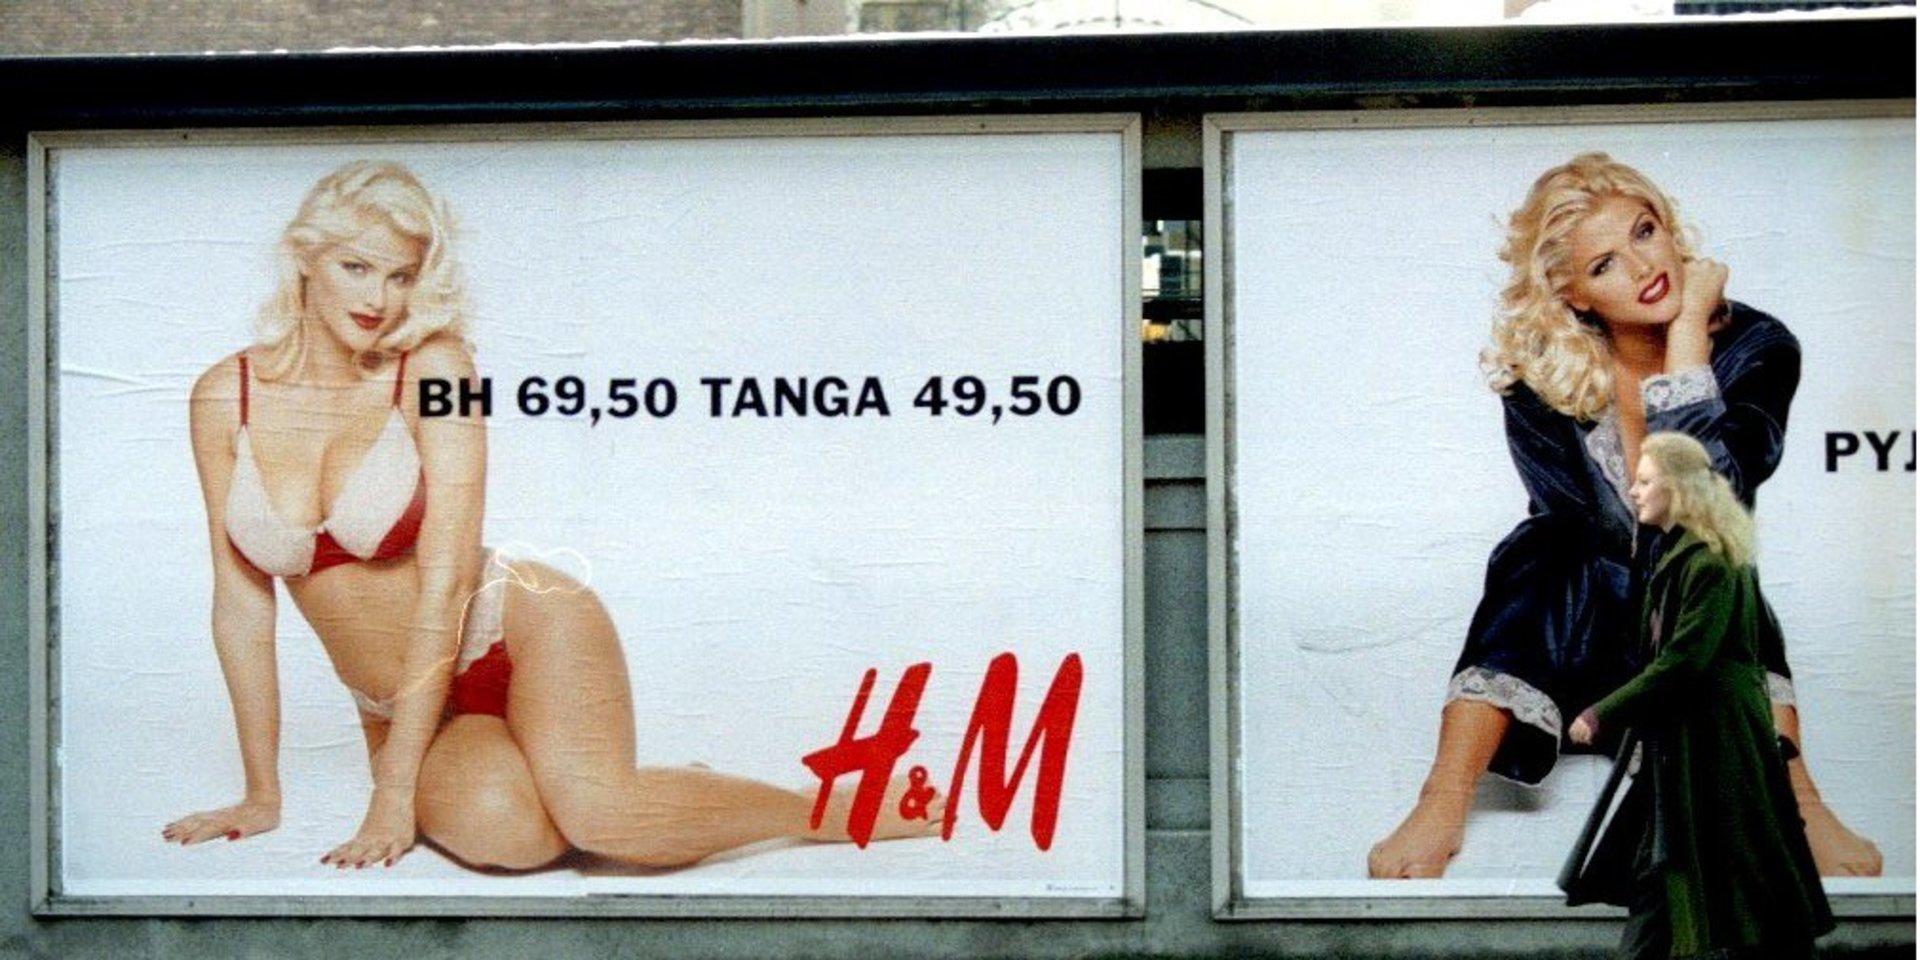 H&M:s underklädesreklam skapade en moralisk diskussion om avkläddhet. Bild från 1993.